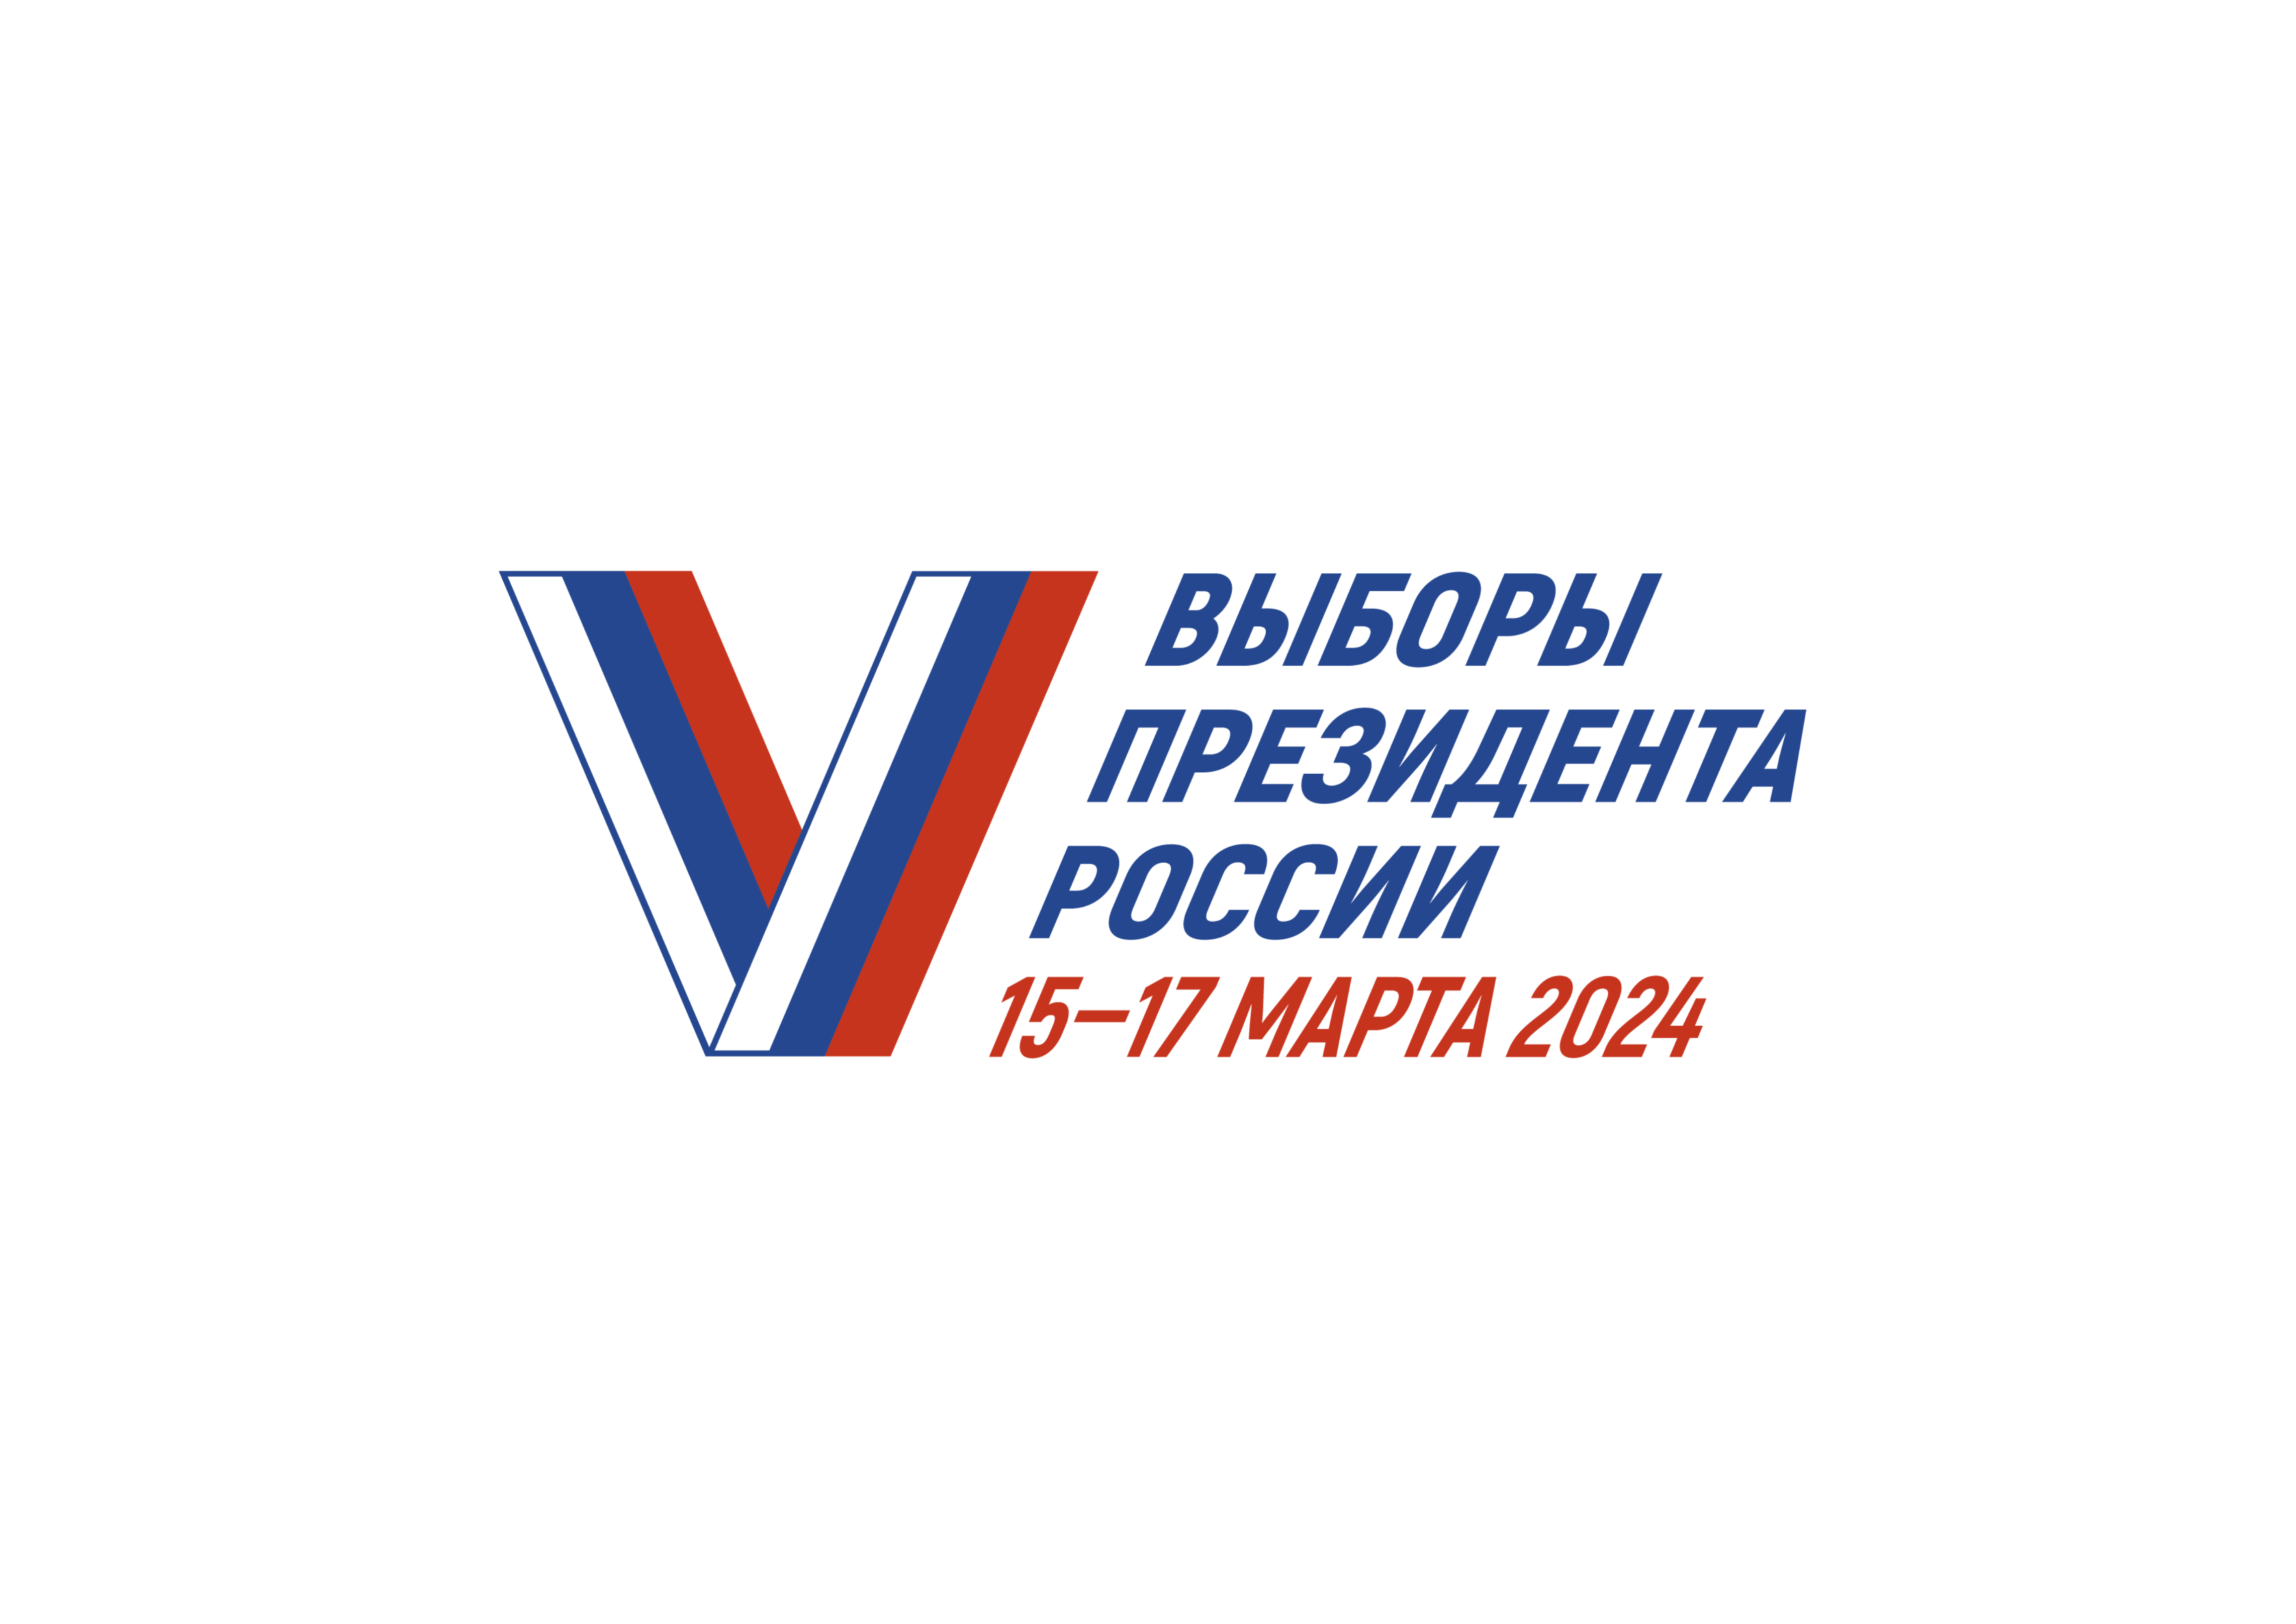 15-17 марта 2024 выборы Президента